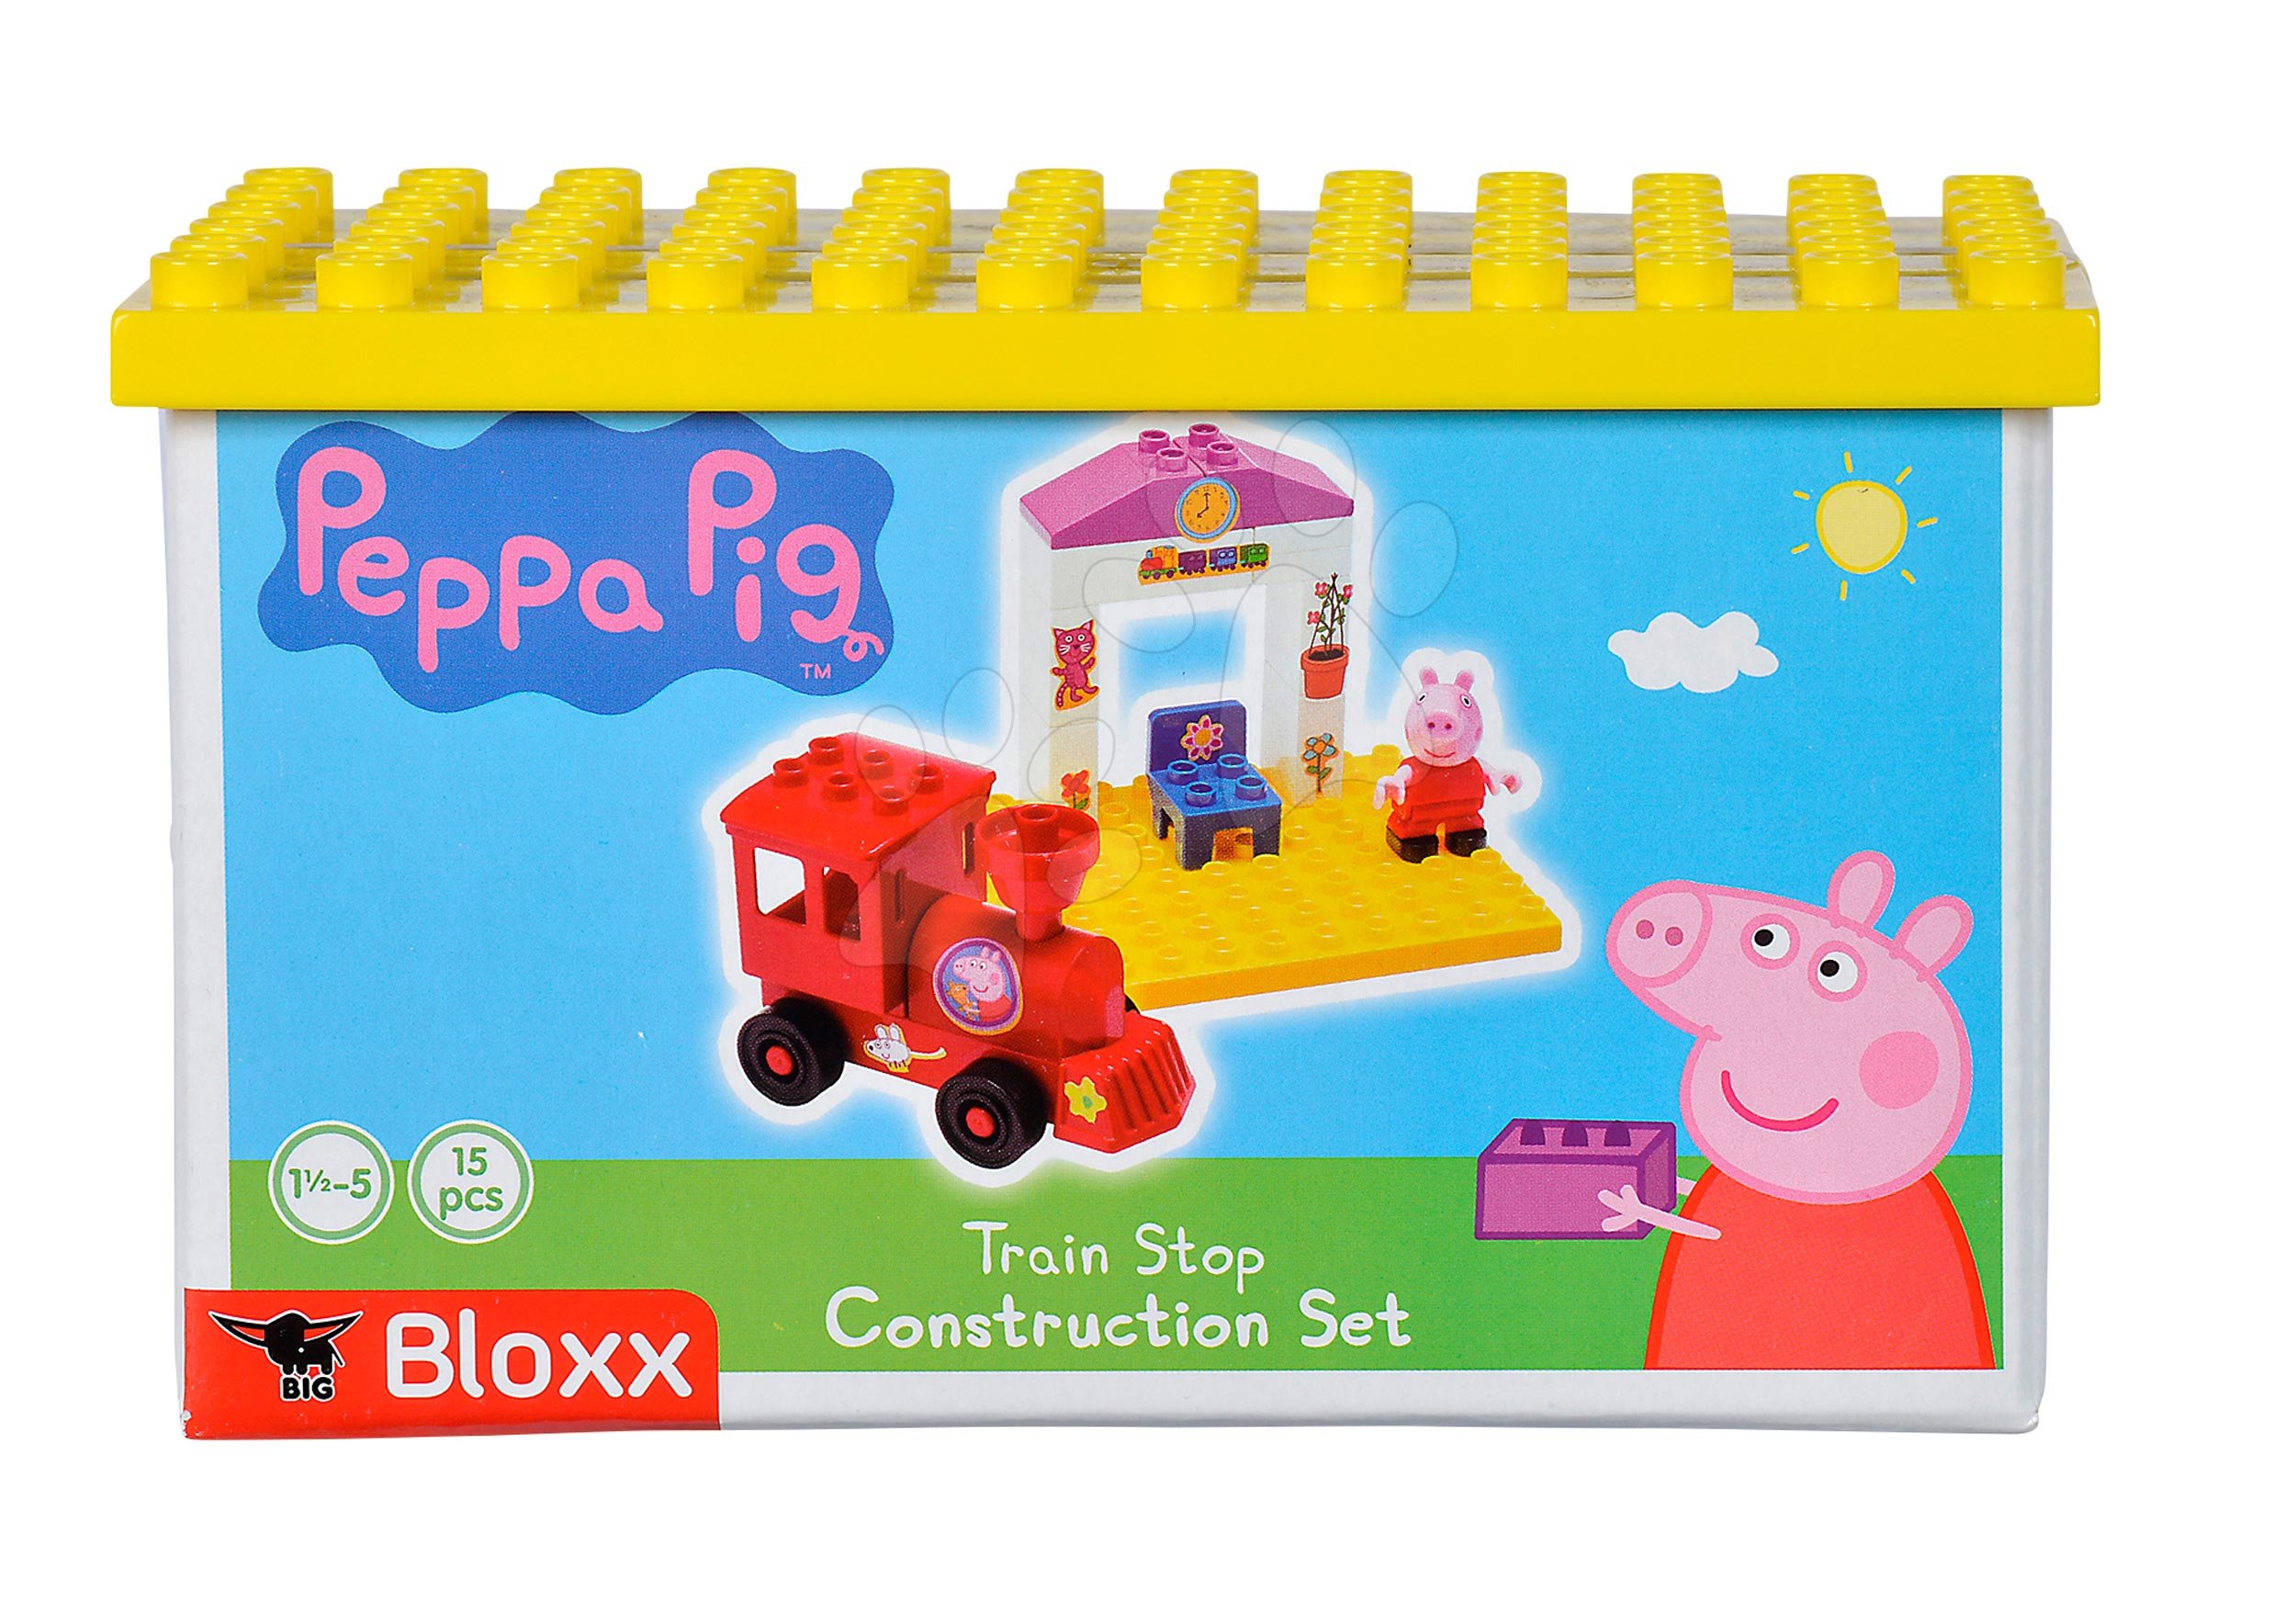 medaillewinnaar Verscherpen Verdorie PlayBIG Bloxx BIG Peppa Pig on a Platform Building Blocks Se